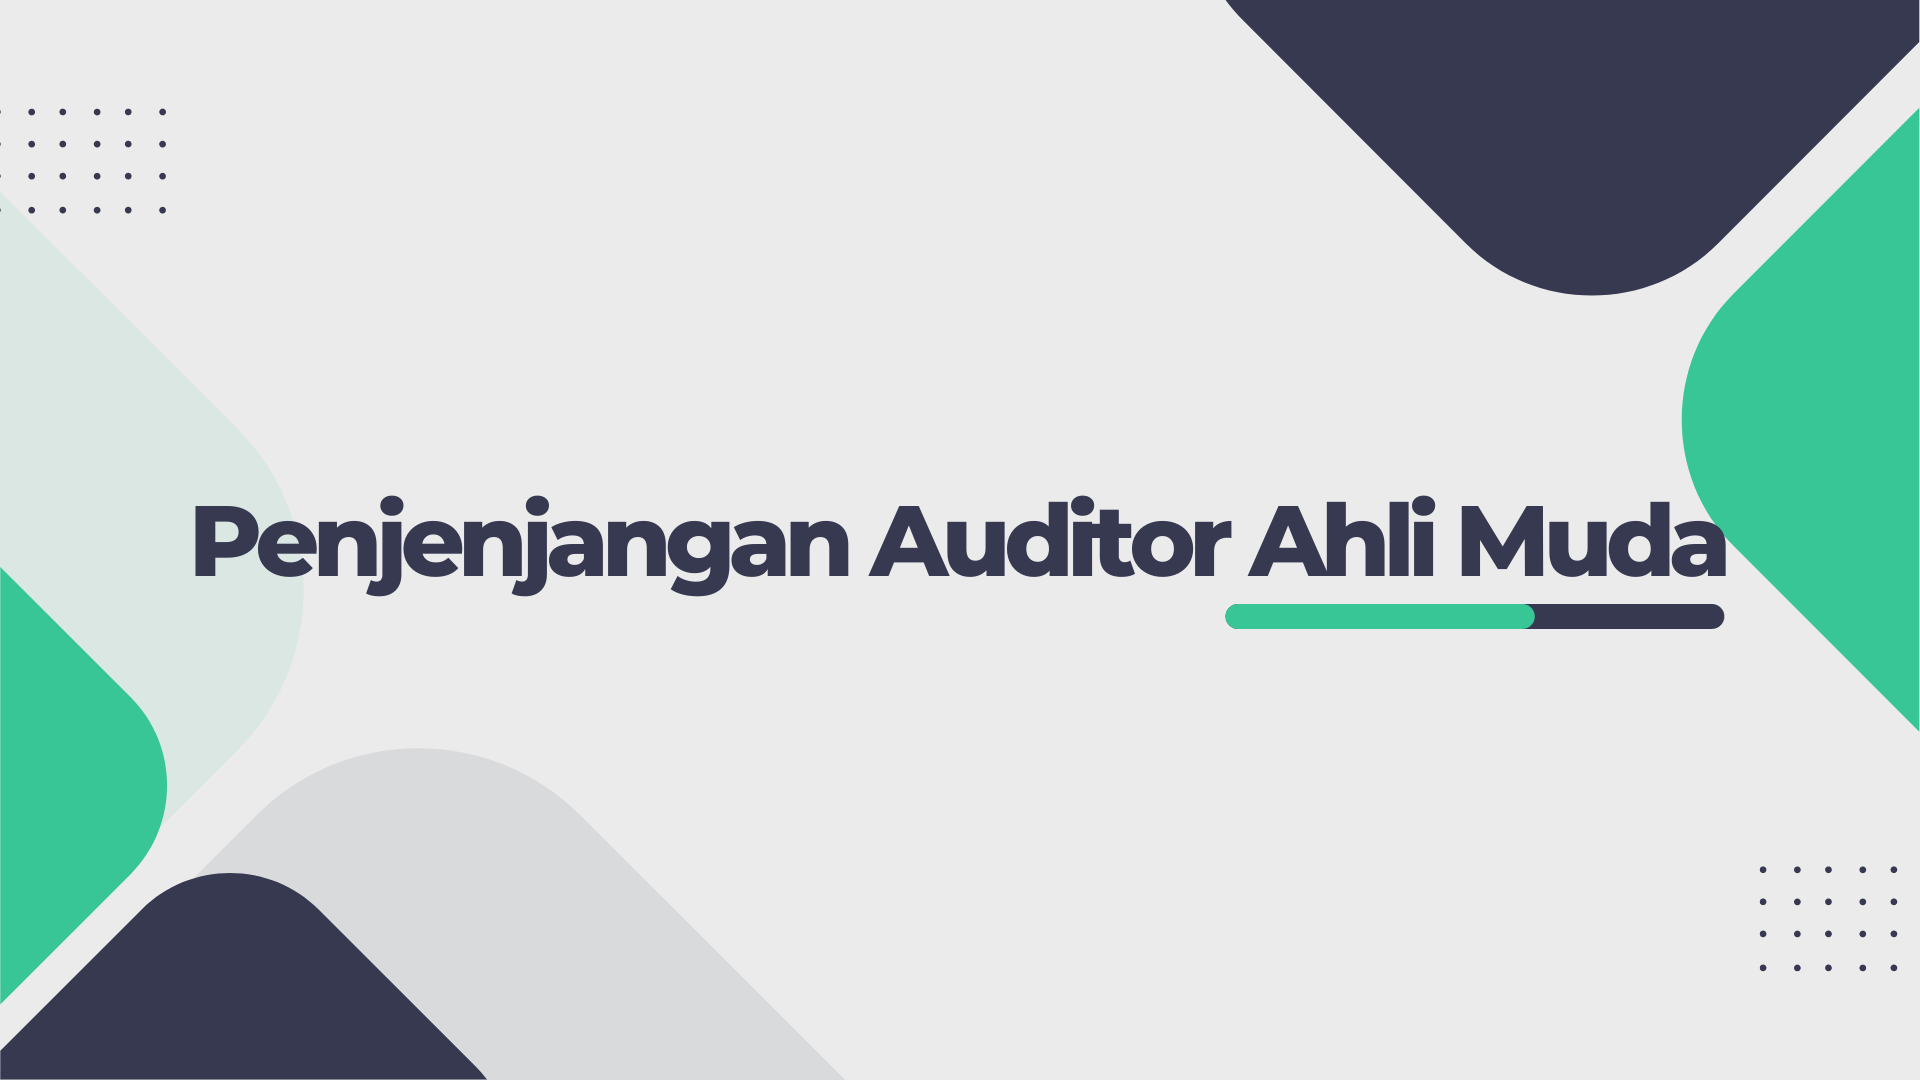 Penjenjangan Auditor Ahli Muda | 0331